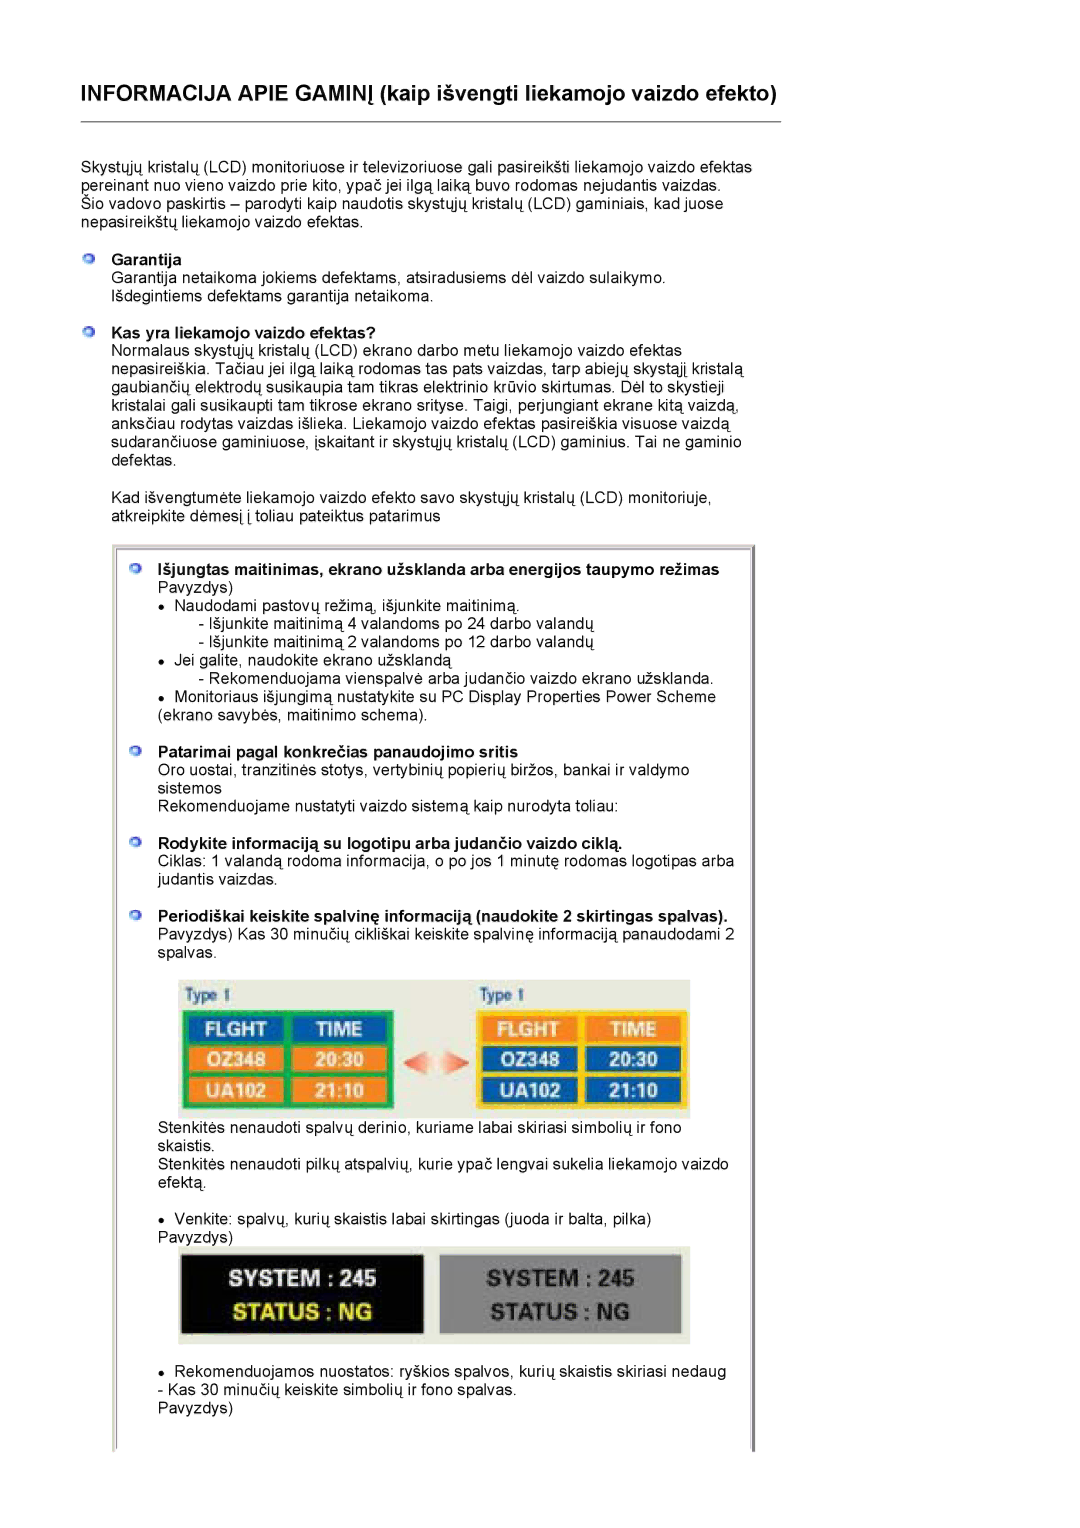 Samsung LS17HADKSX/EDC manual Garantija, Kas yra liekamojo vaizdo efektas?, Patarimai pagal konkrečias panaudojimo sritis 